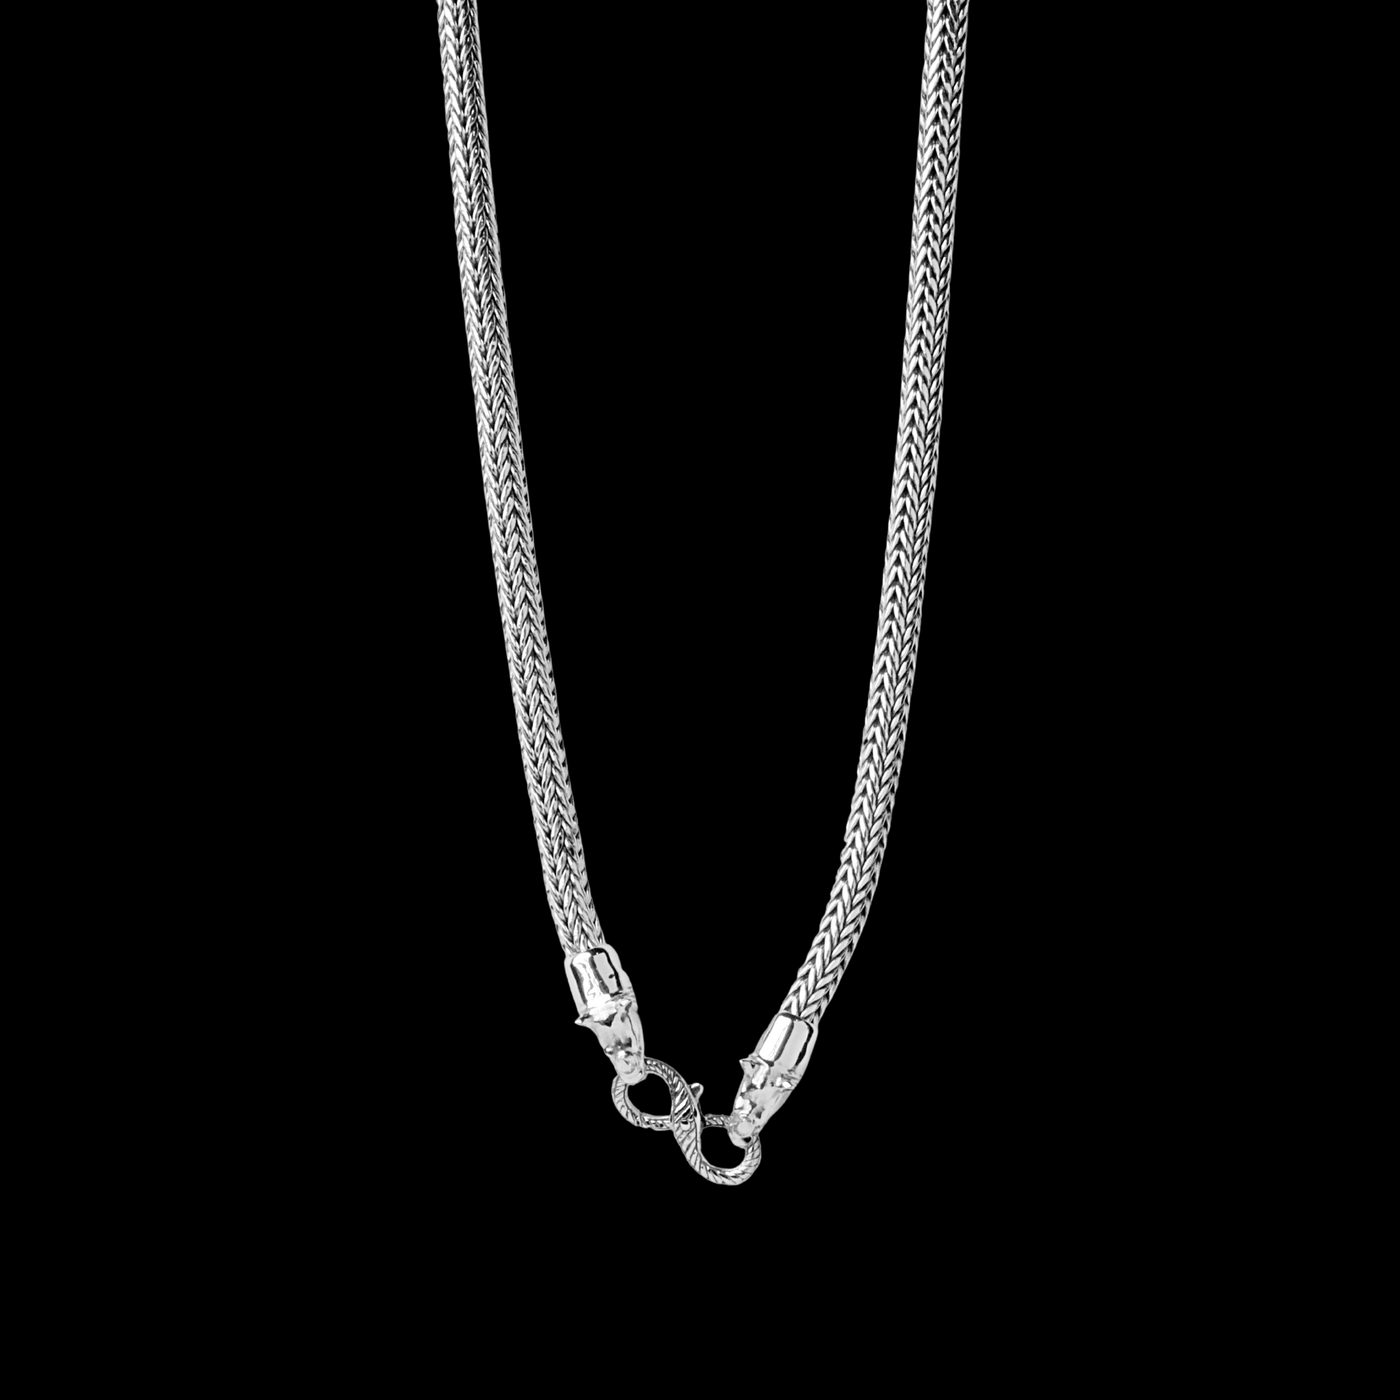 Rhinoceros Silver Necklace